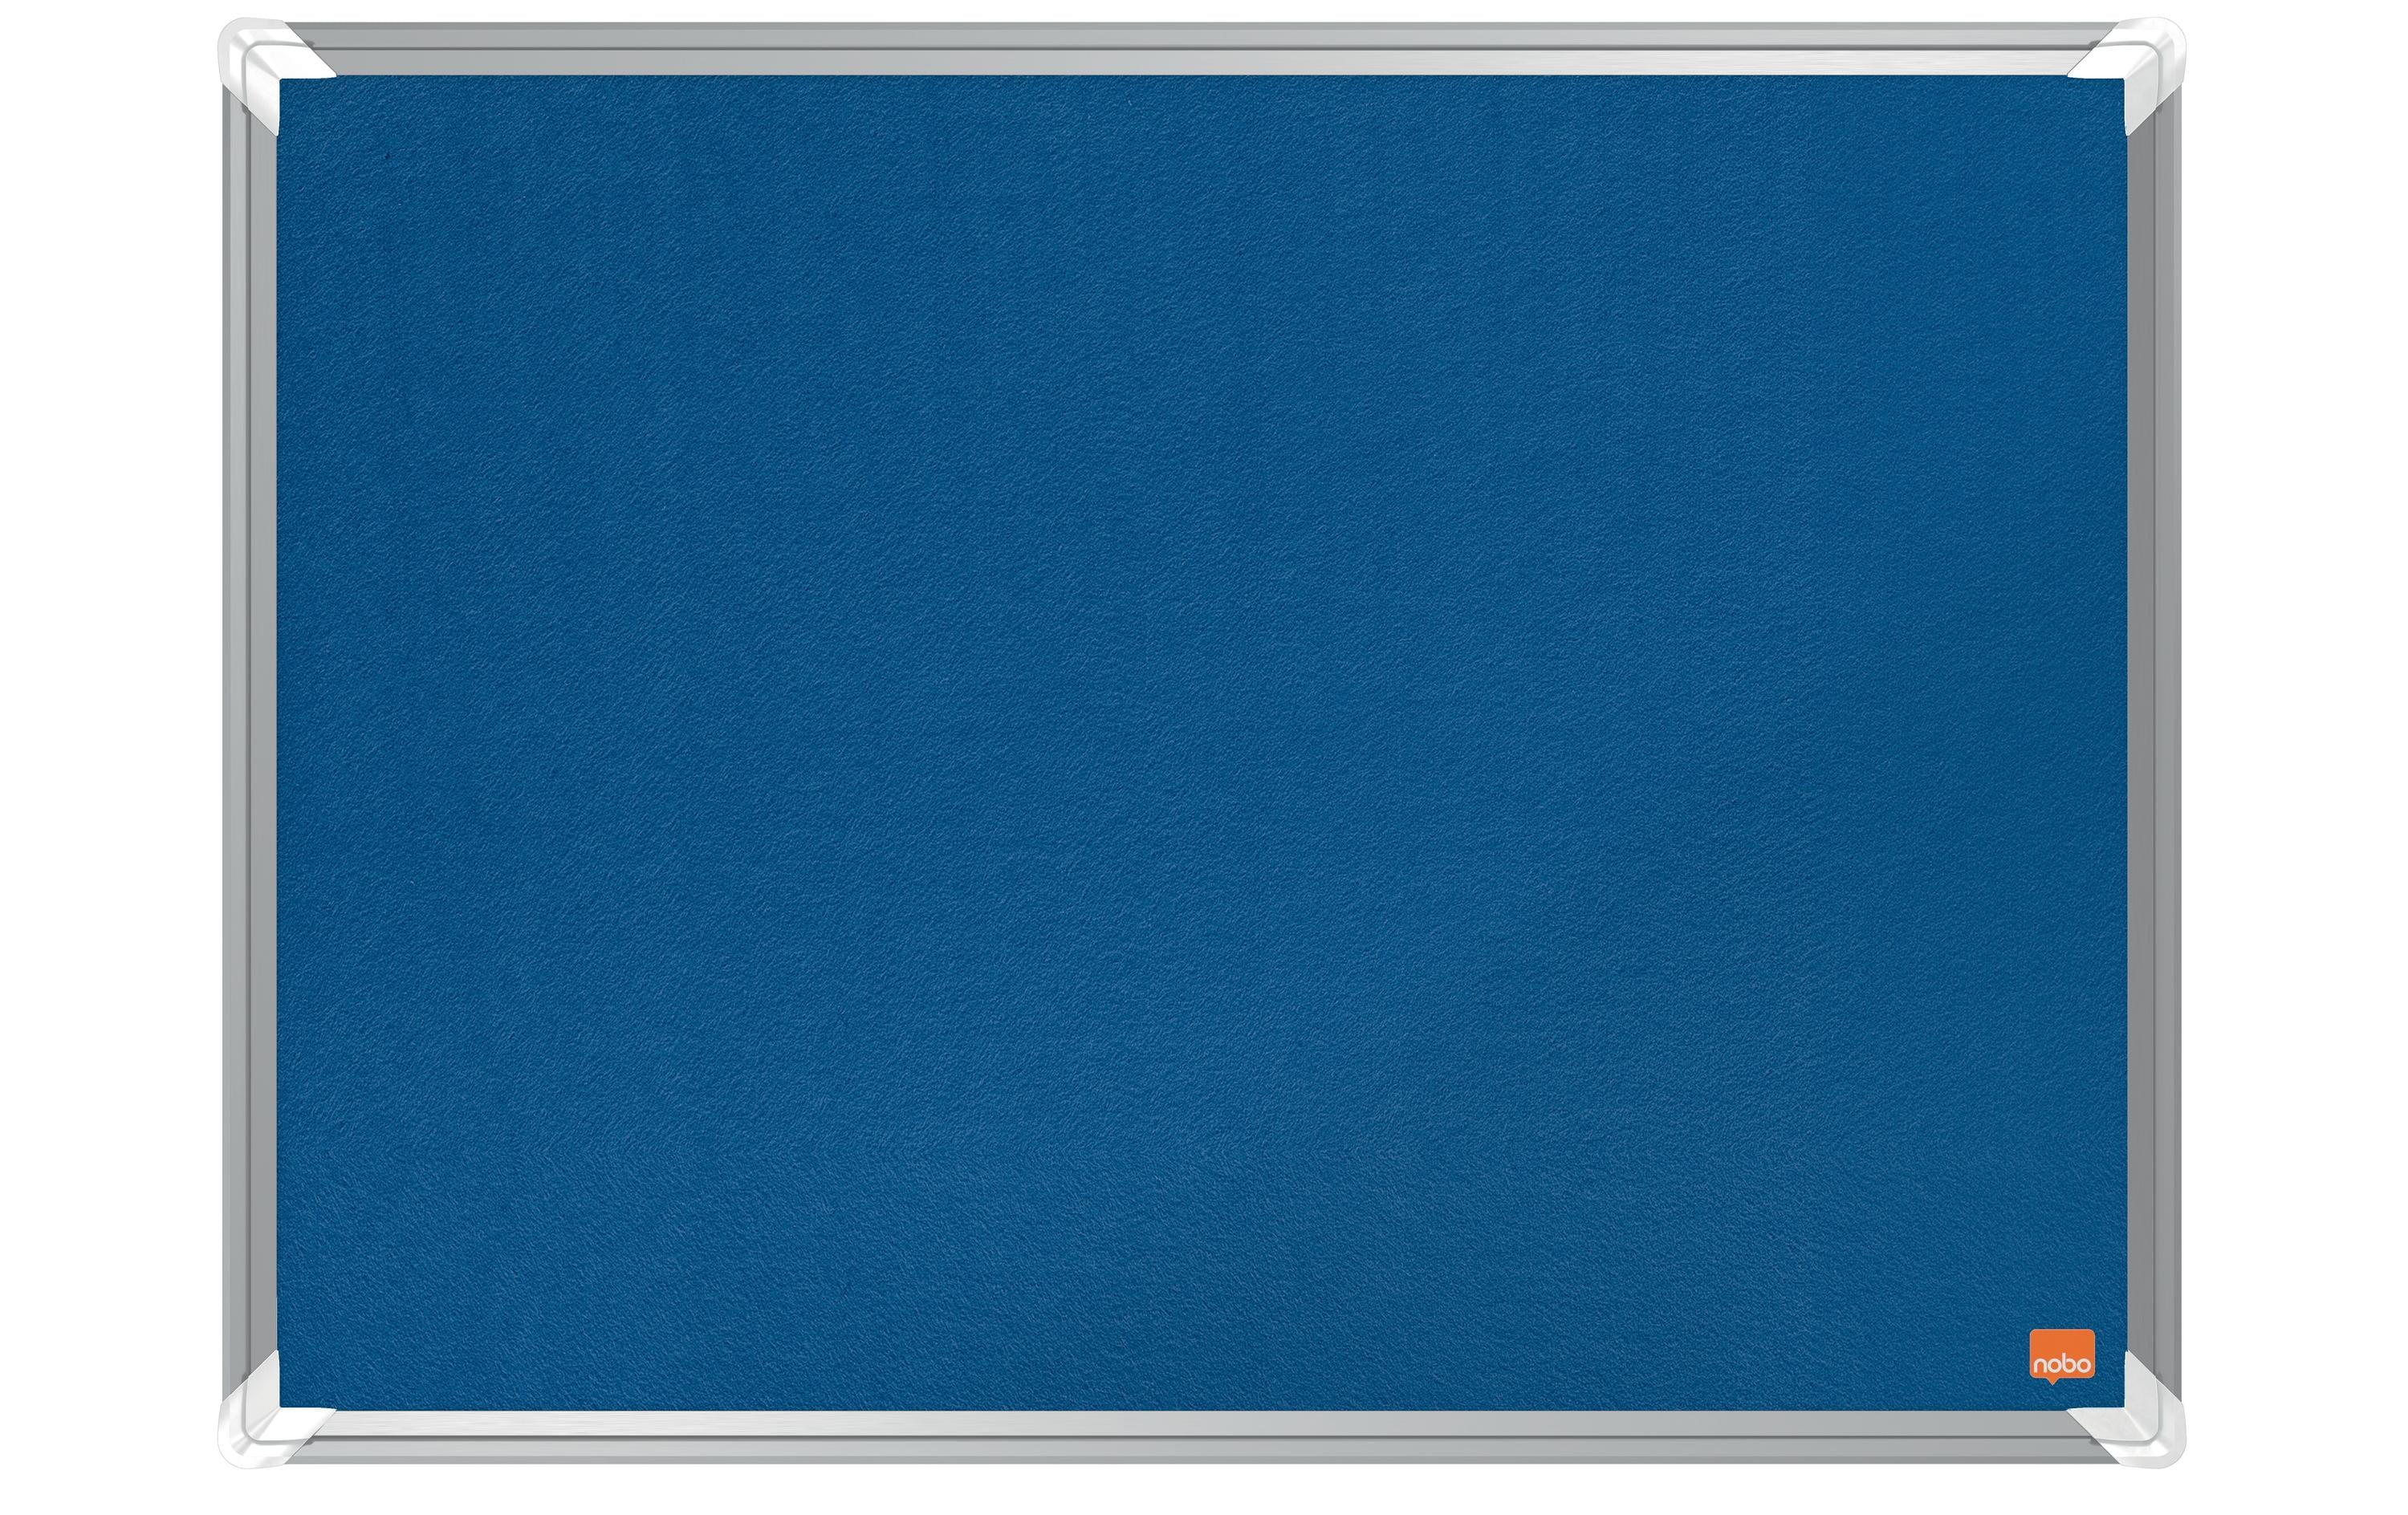 Nobo Pinnwand Premium Plus 120 cm x 120 cm, Blau